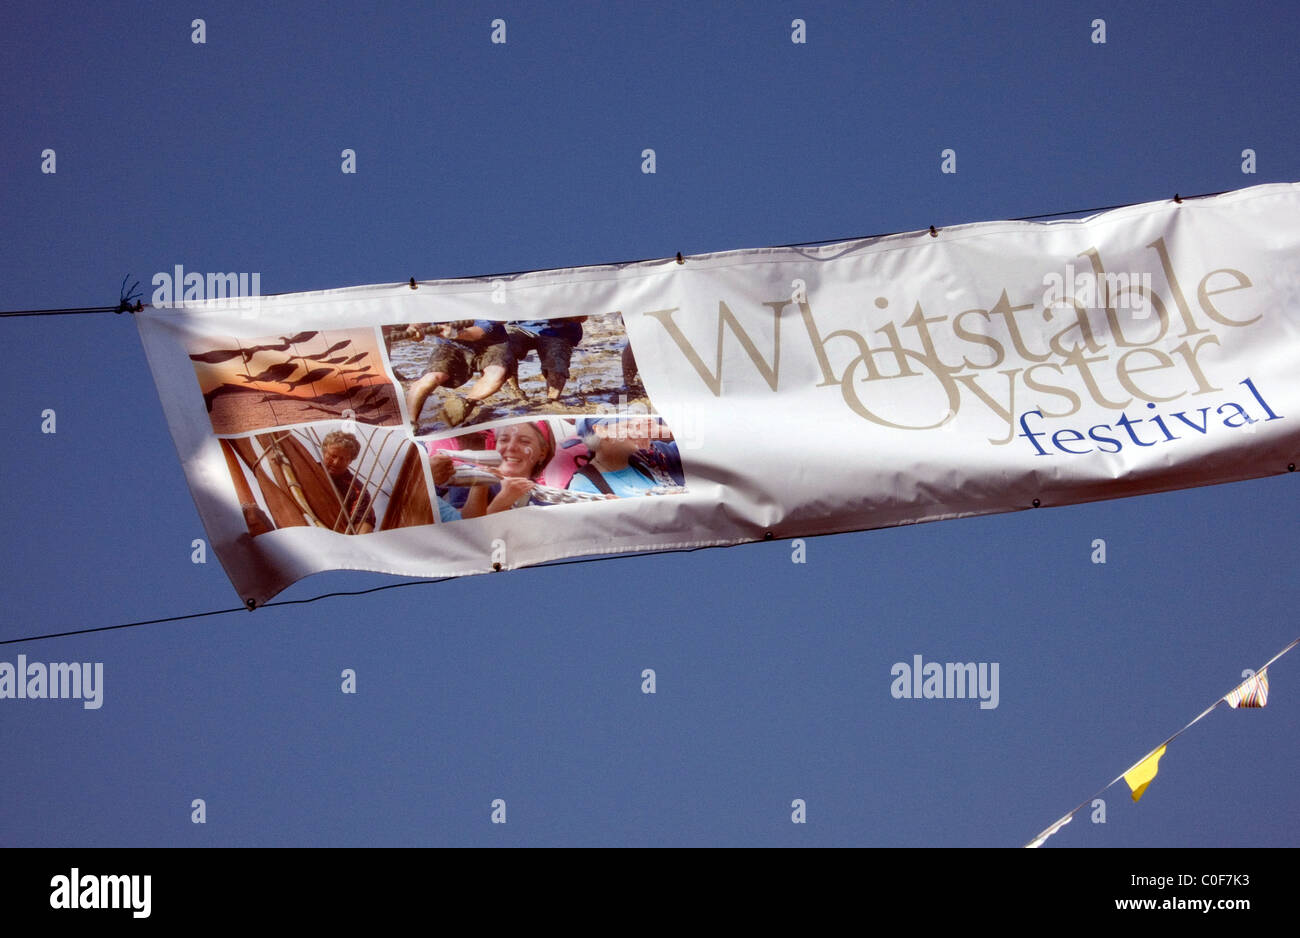 Whitstable Oyster Festival Straße banner Stockfoto